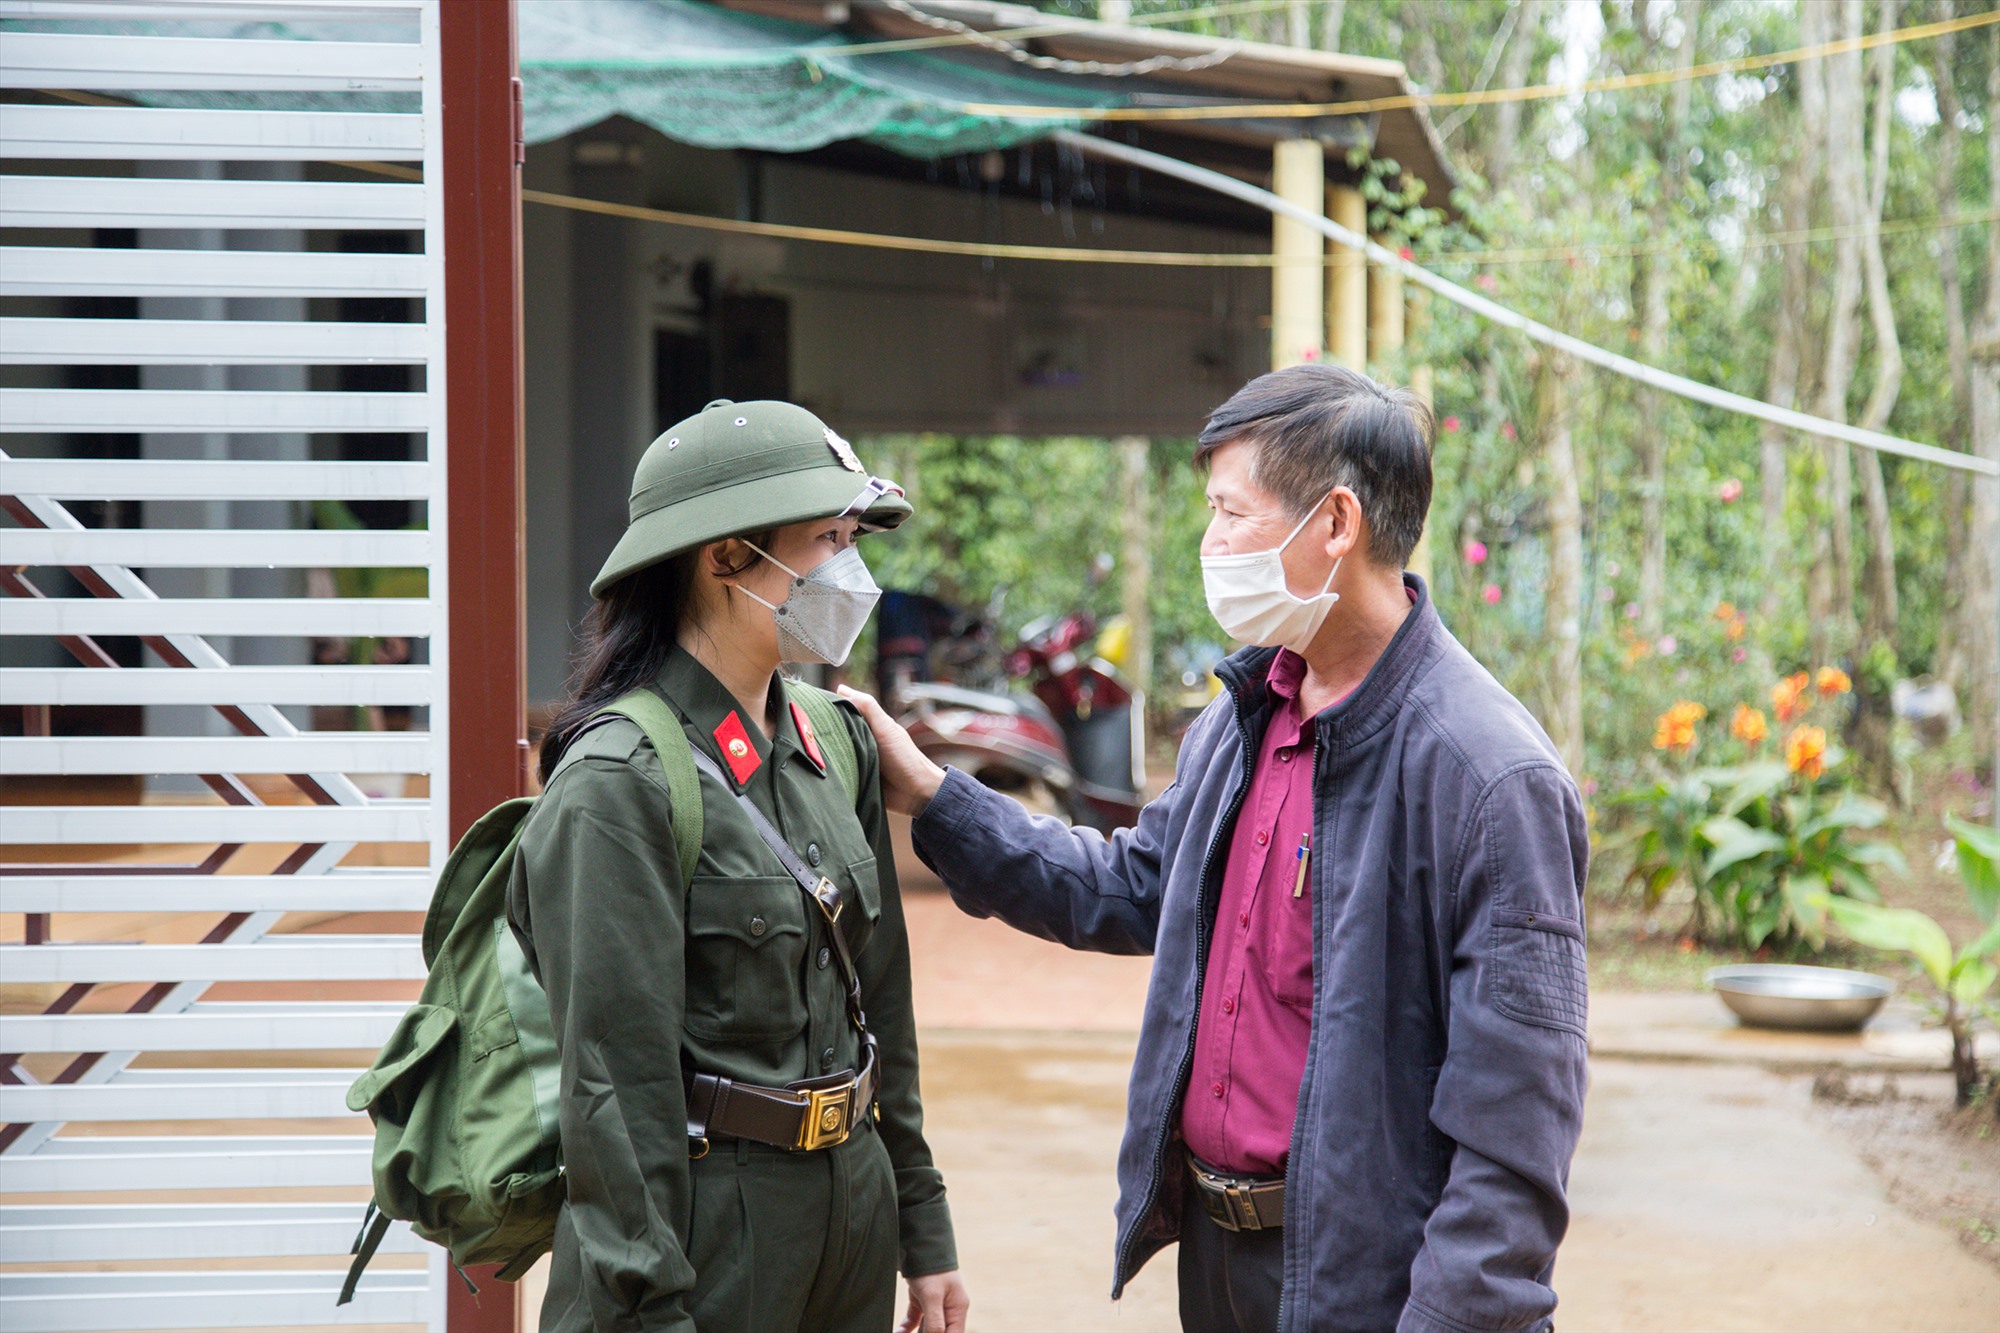 Là nữ tân binh duy nhất của tỉnh Quảng Trị, em Nguyễn Thị Hải Vân (thành phố Đông Hà) được bố căn dặn kỹ lưỡng trước ngày lên đường làm nghĩa vụ thiêng liêng bảo vệ Tổ quốc